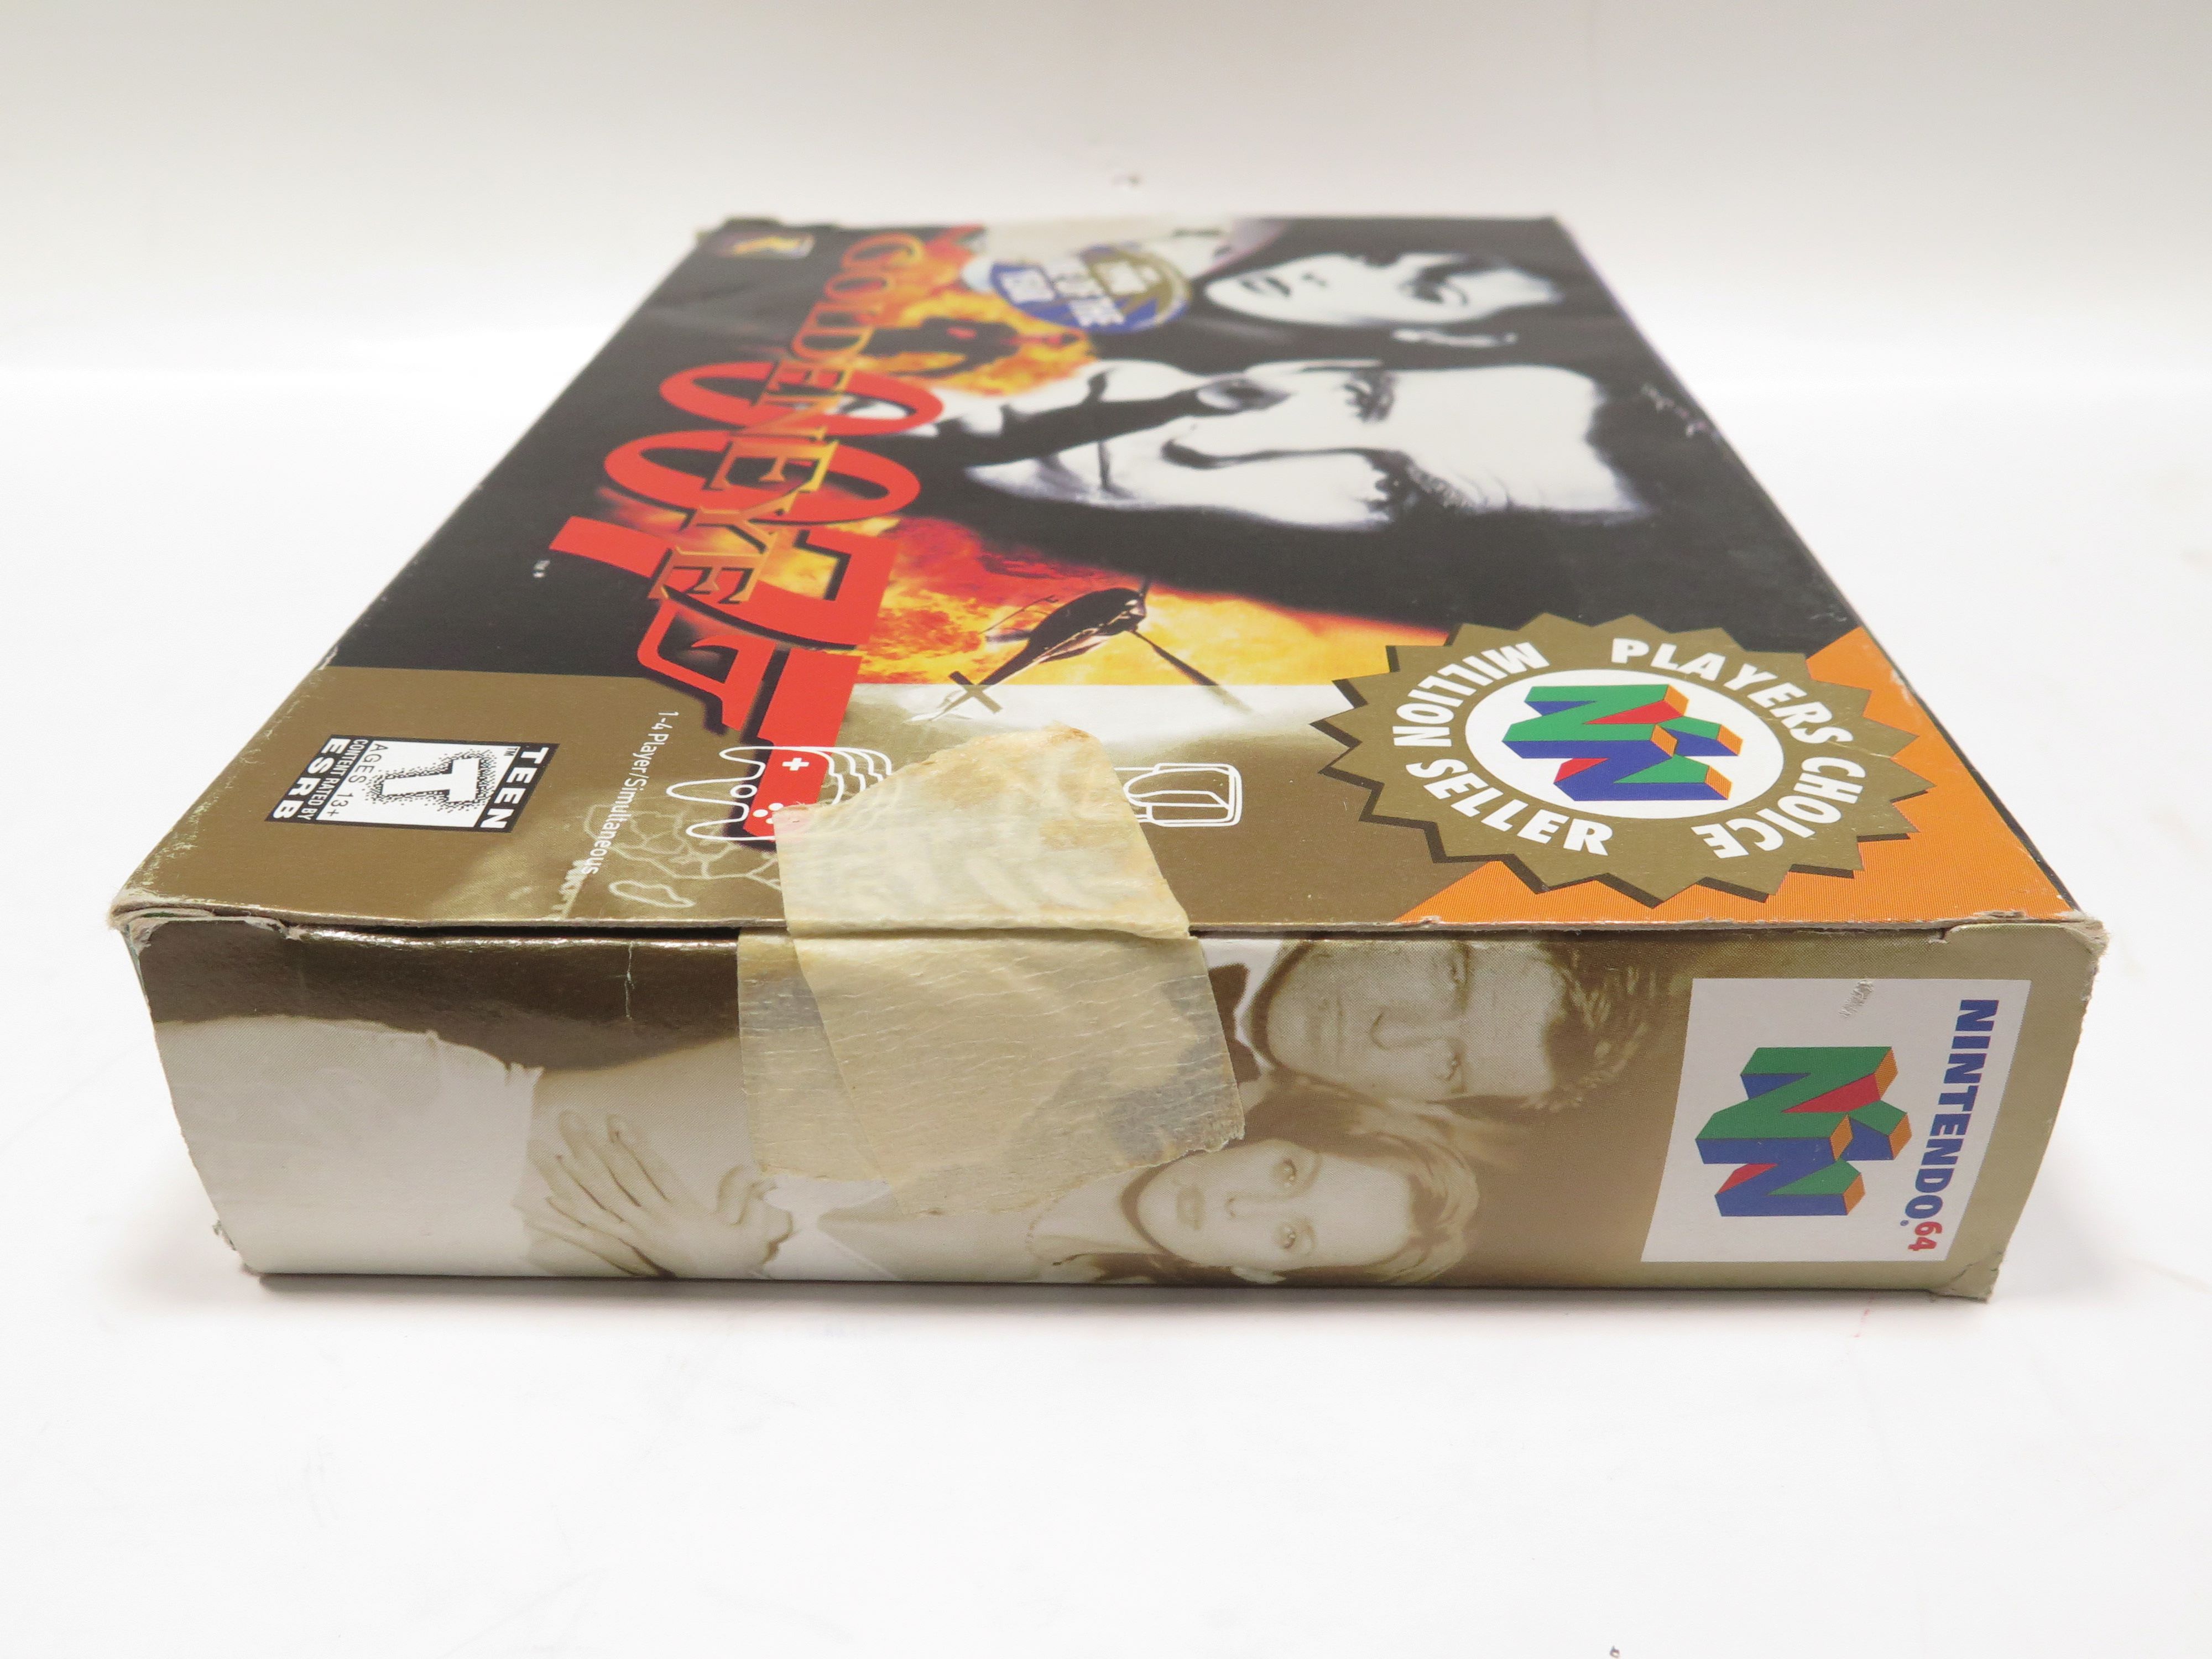 GoldenEye 007 Games Cartridge Card for N64 US Version 